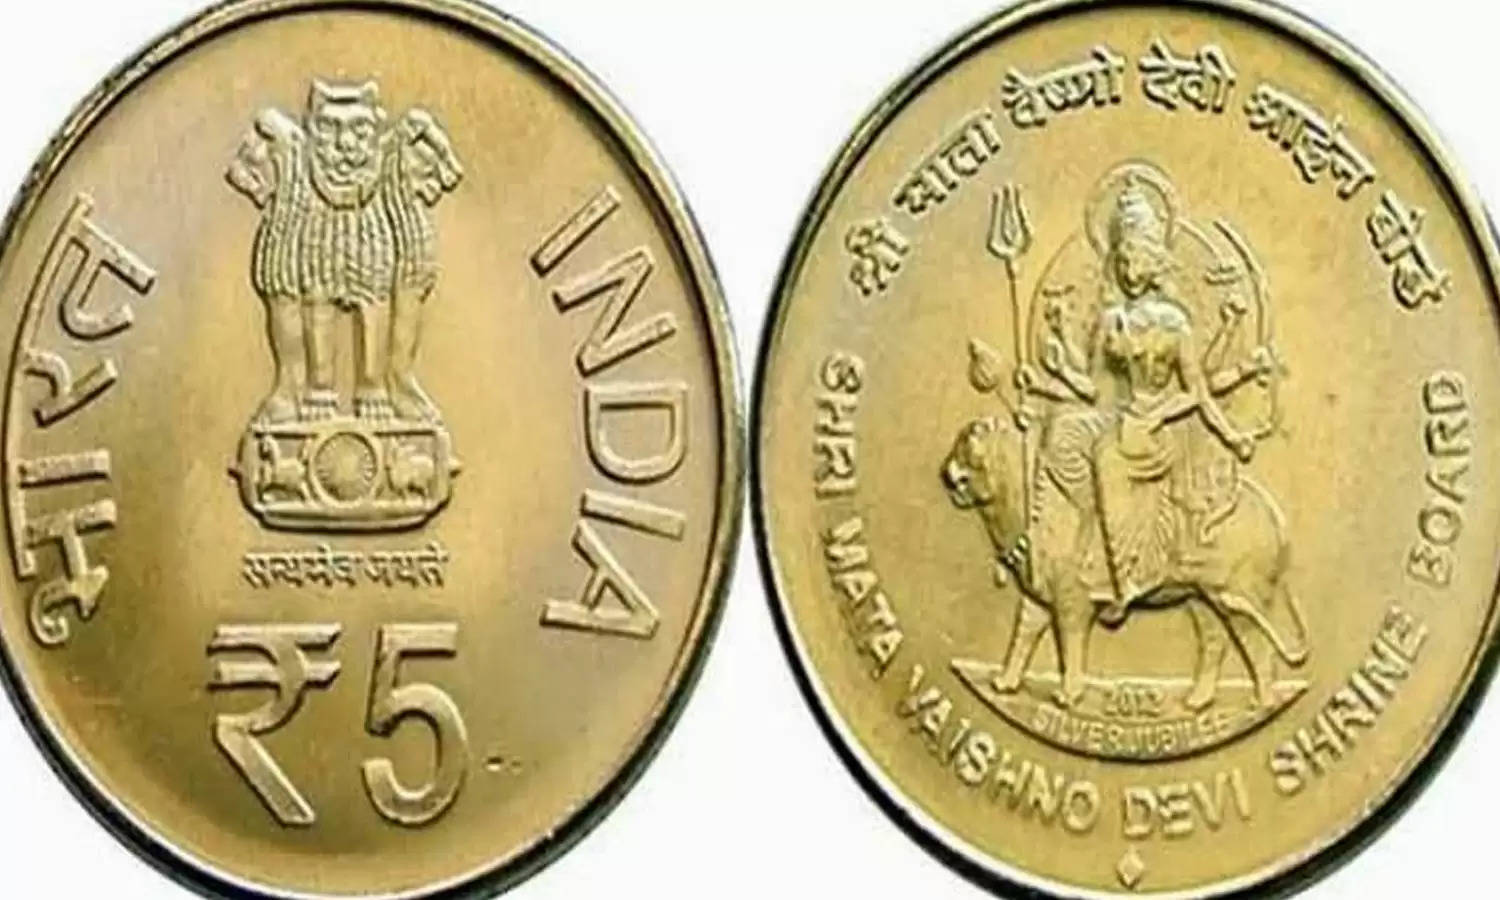 Earn Money From Old Coin: माँ वैष्णो देवी की तस्वीर वाला ये सिक्का, आपको बना सकता है लखपती, बस करना होगा ये काम